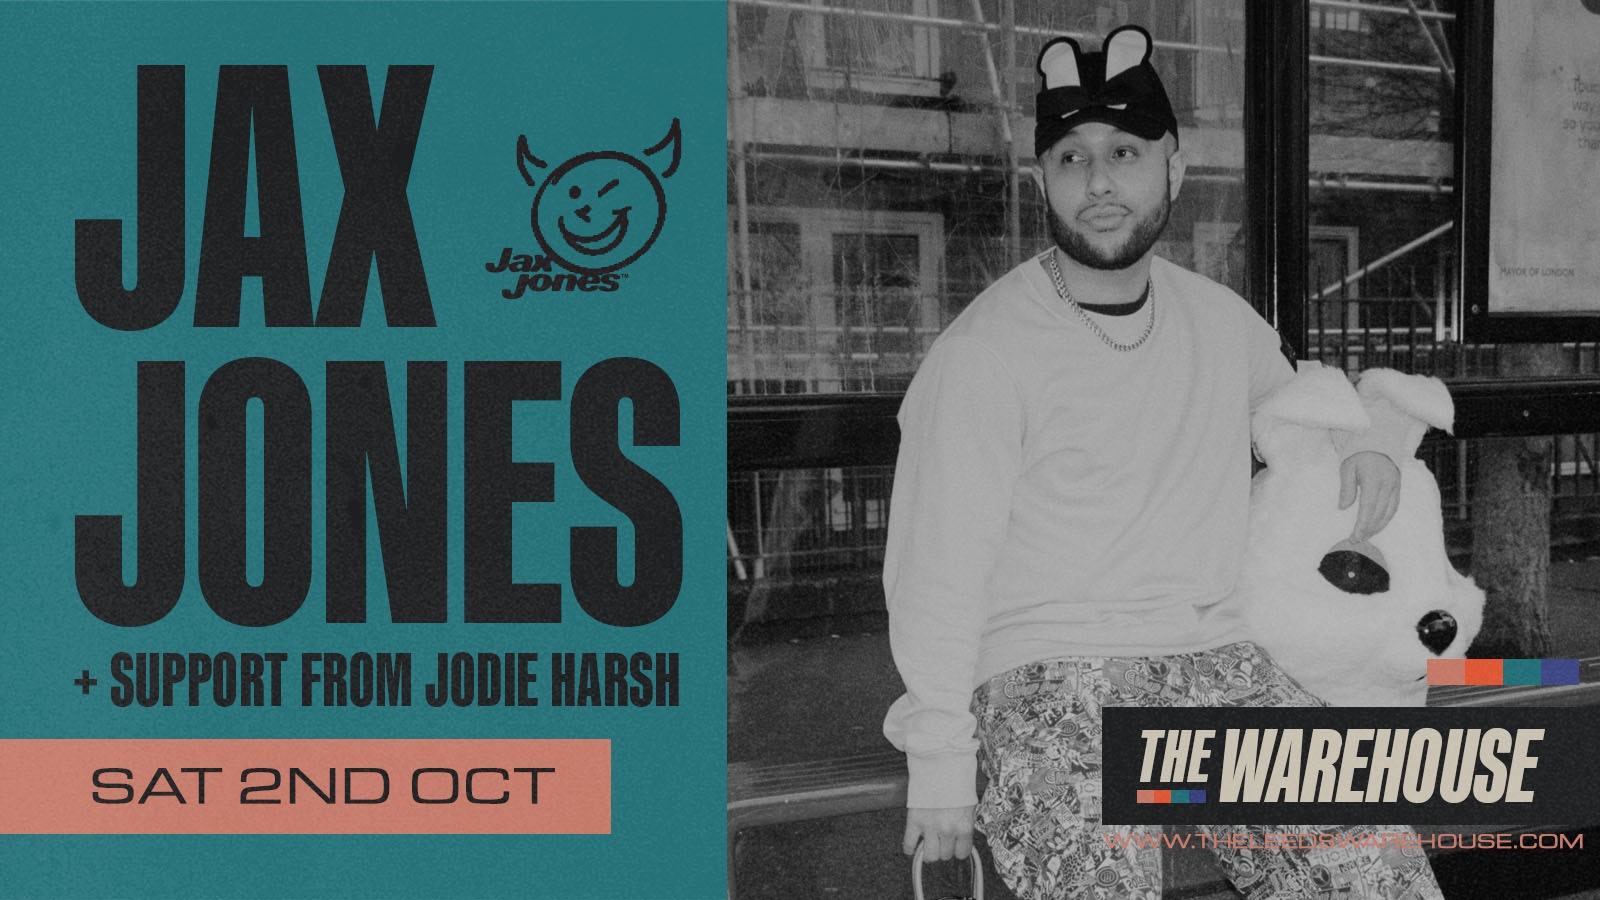 Jax Jones – Club